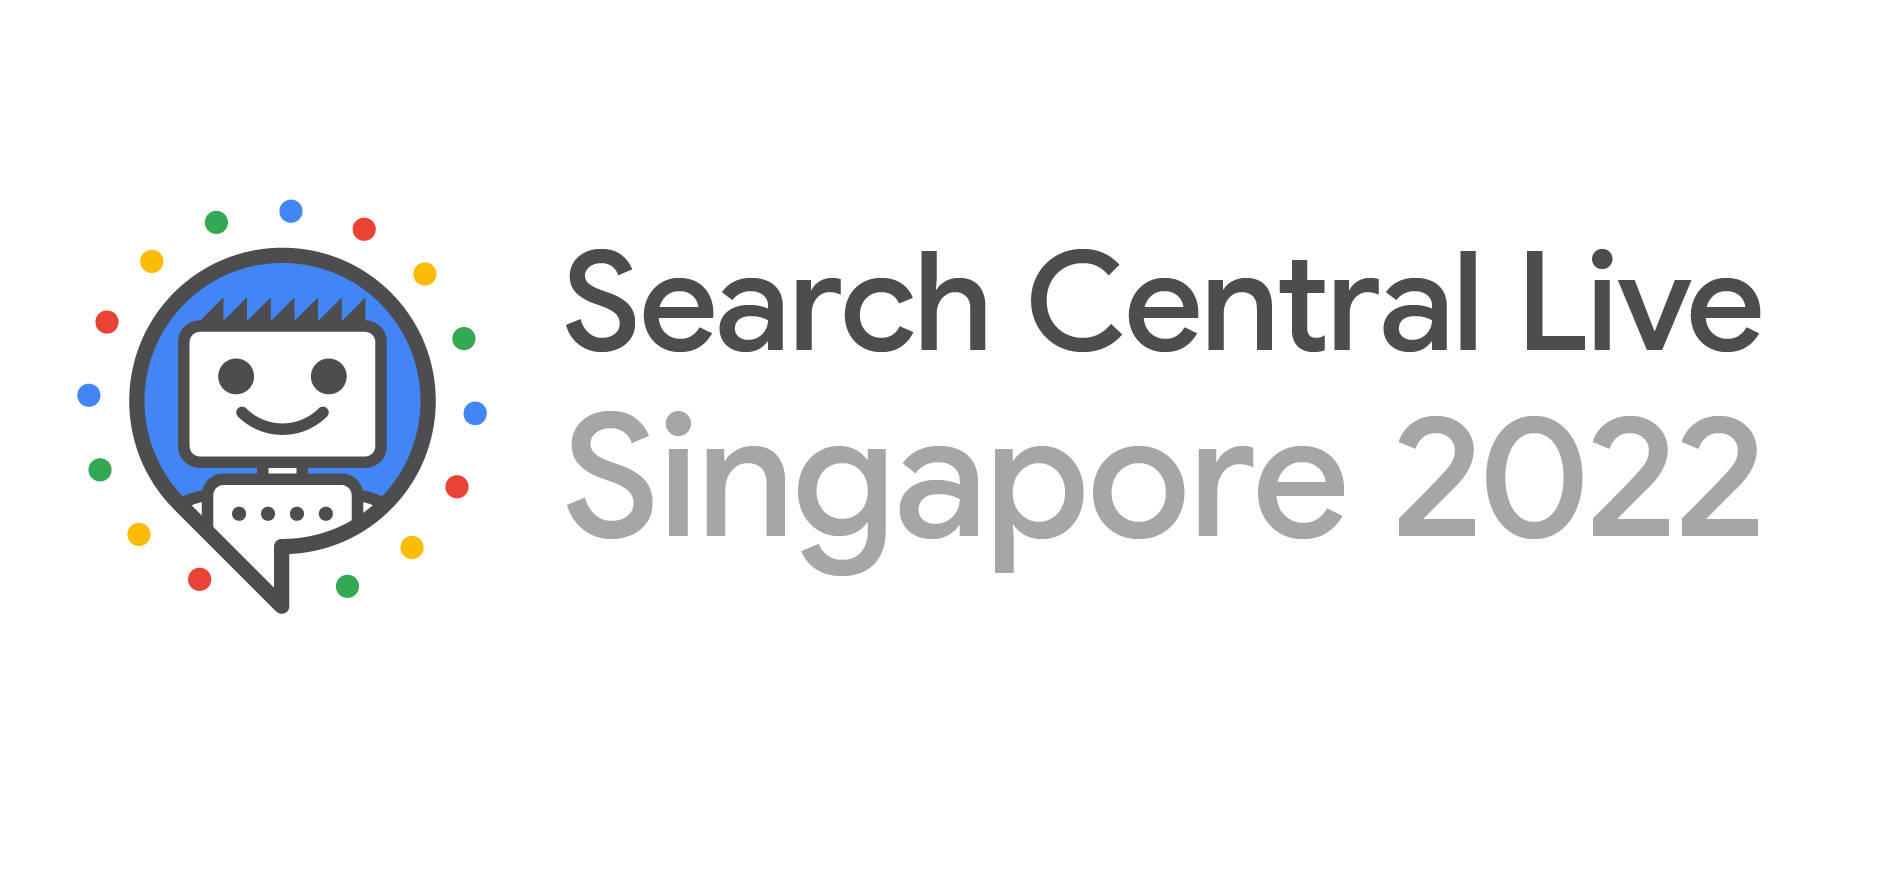 2022 年新加坡 Search Central Live 徽标